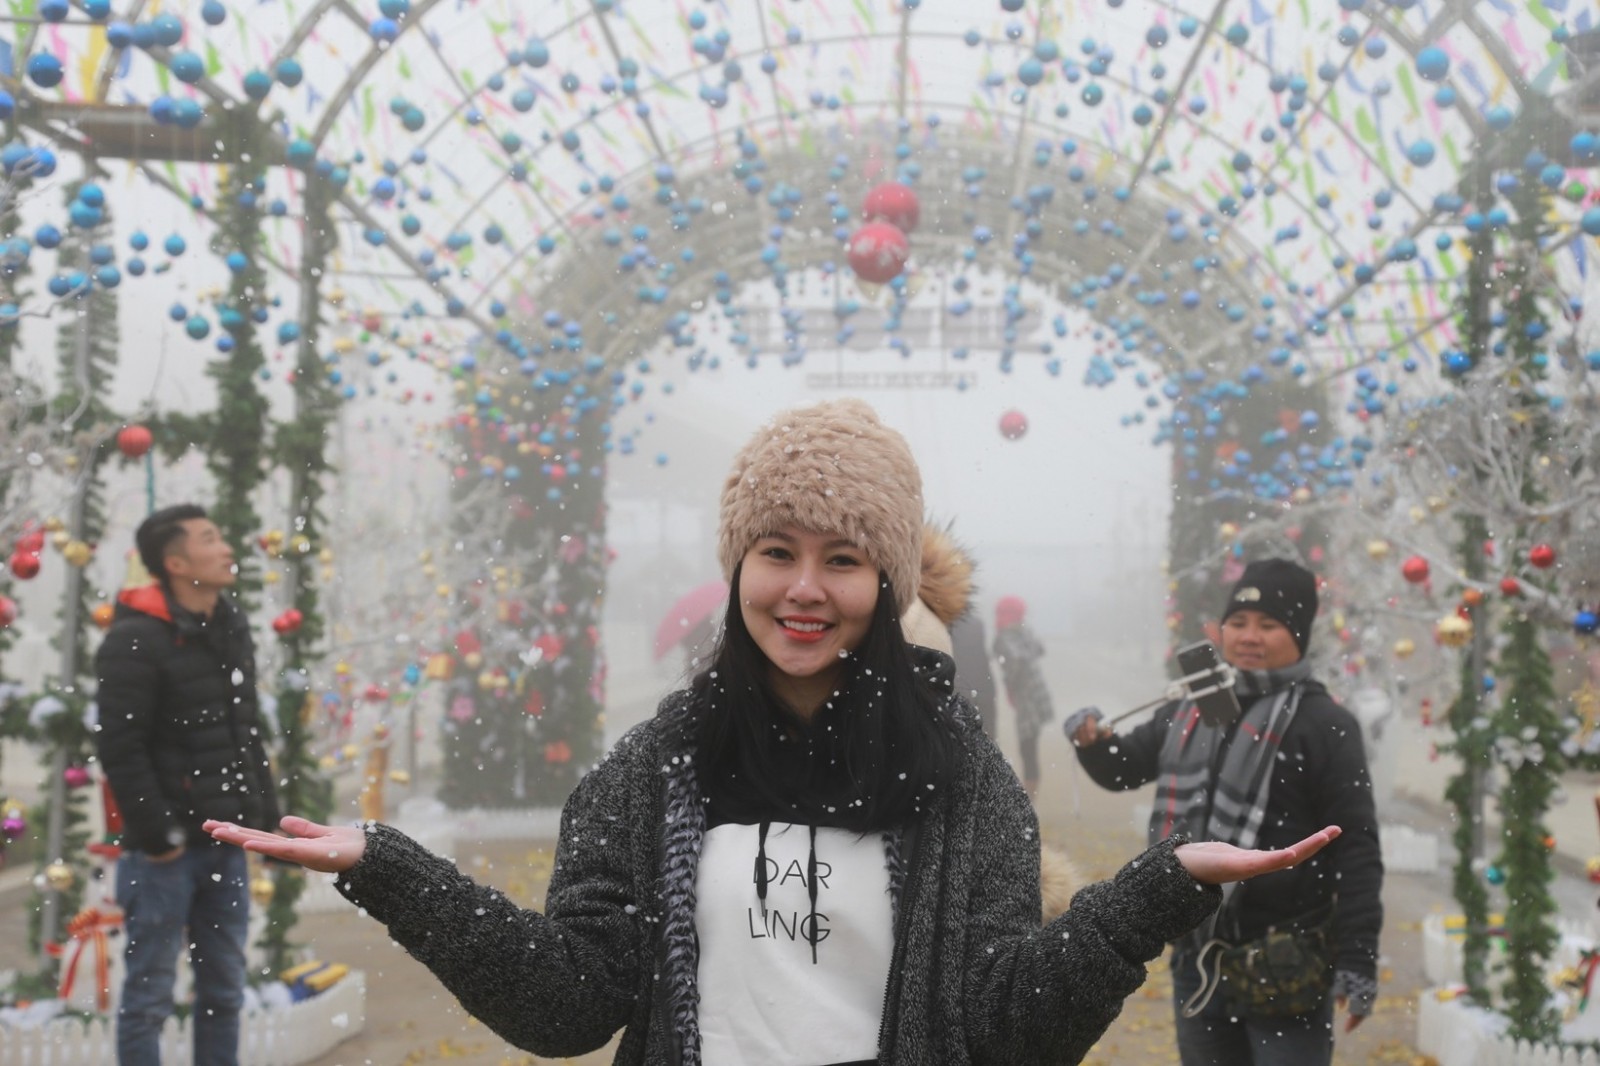 Chỉ vài giờ di chuyển từ Hà Nội, bạn đã đặt chân tới một thiên đường hoàn toàn khác. Mùa đông năm nay (từ 23/12/2017 đến 2/1/2018), khu du lịch Sun World Fansipan Legend lần đầu tiên tổ chức Lễ hội mùa đông với chủ đề “thiên đường tuyết rơi” đẹp ngỡ ngàng.